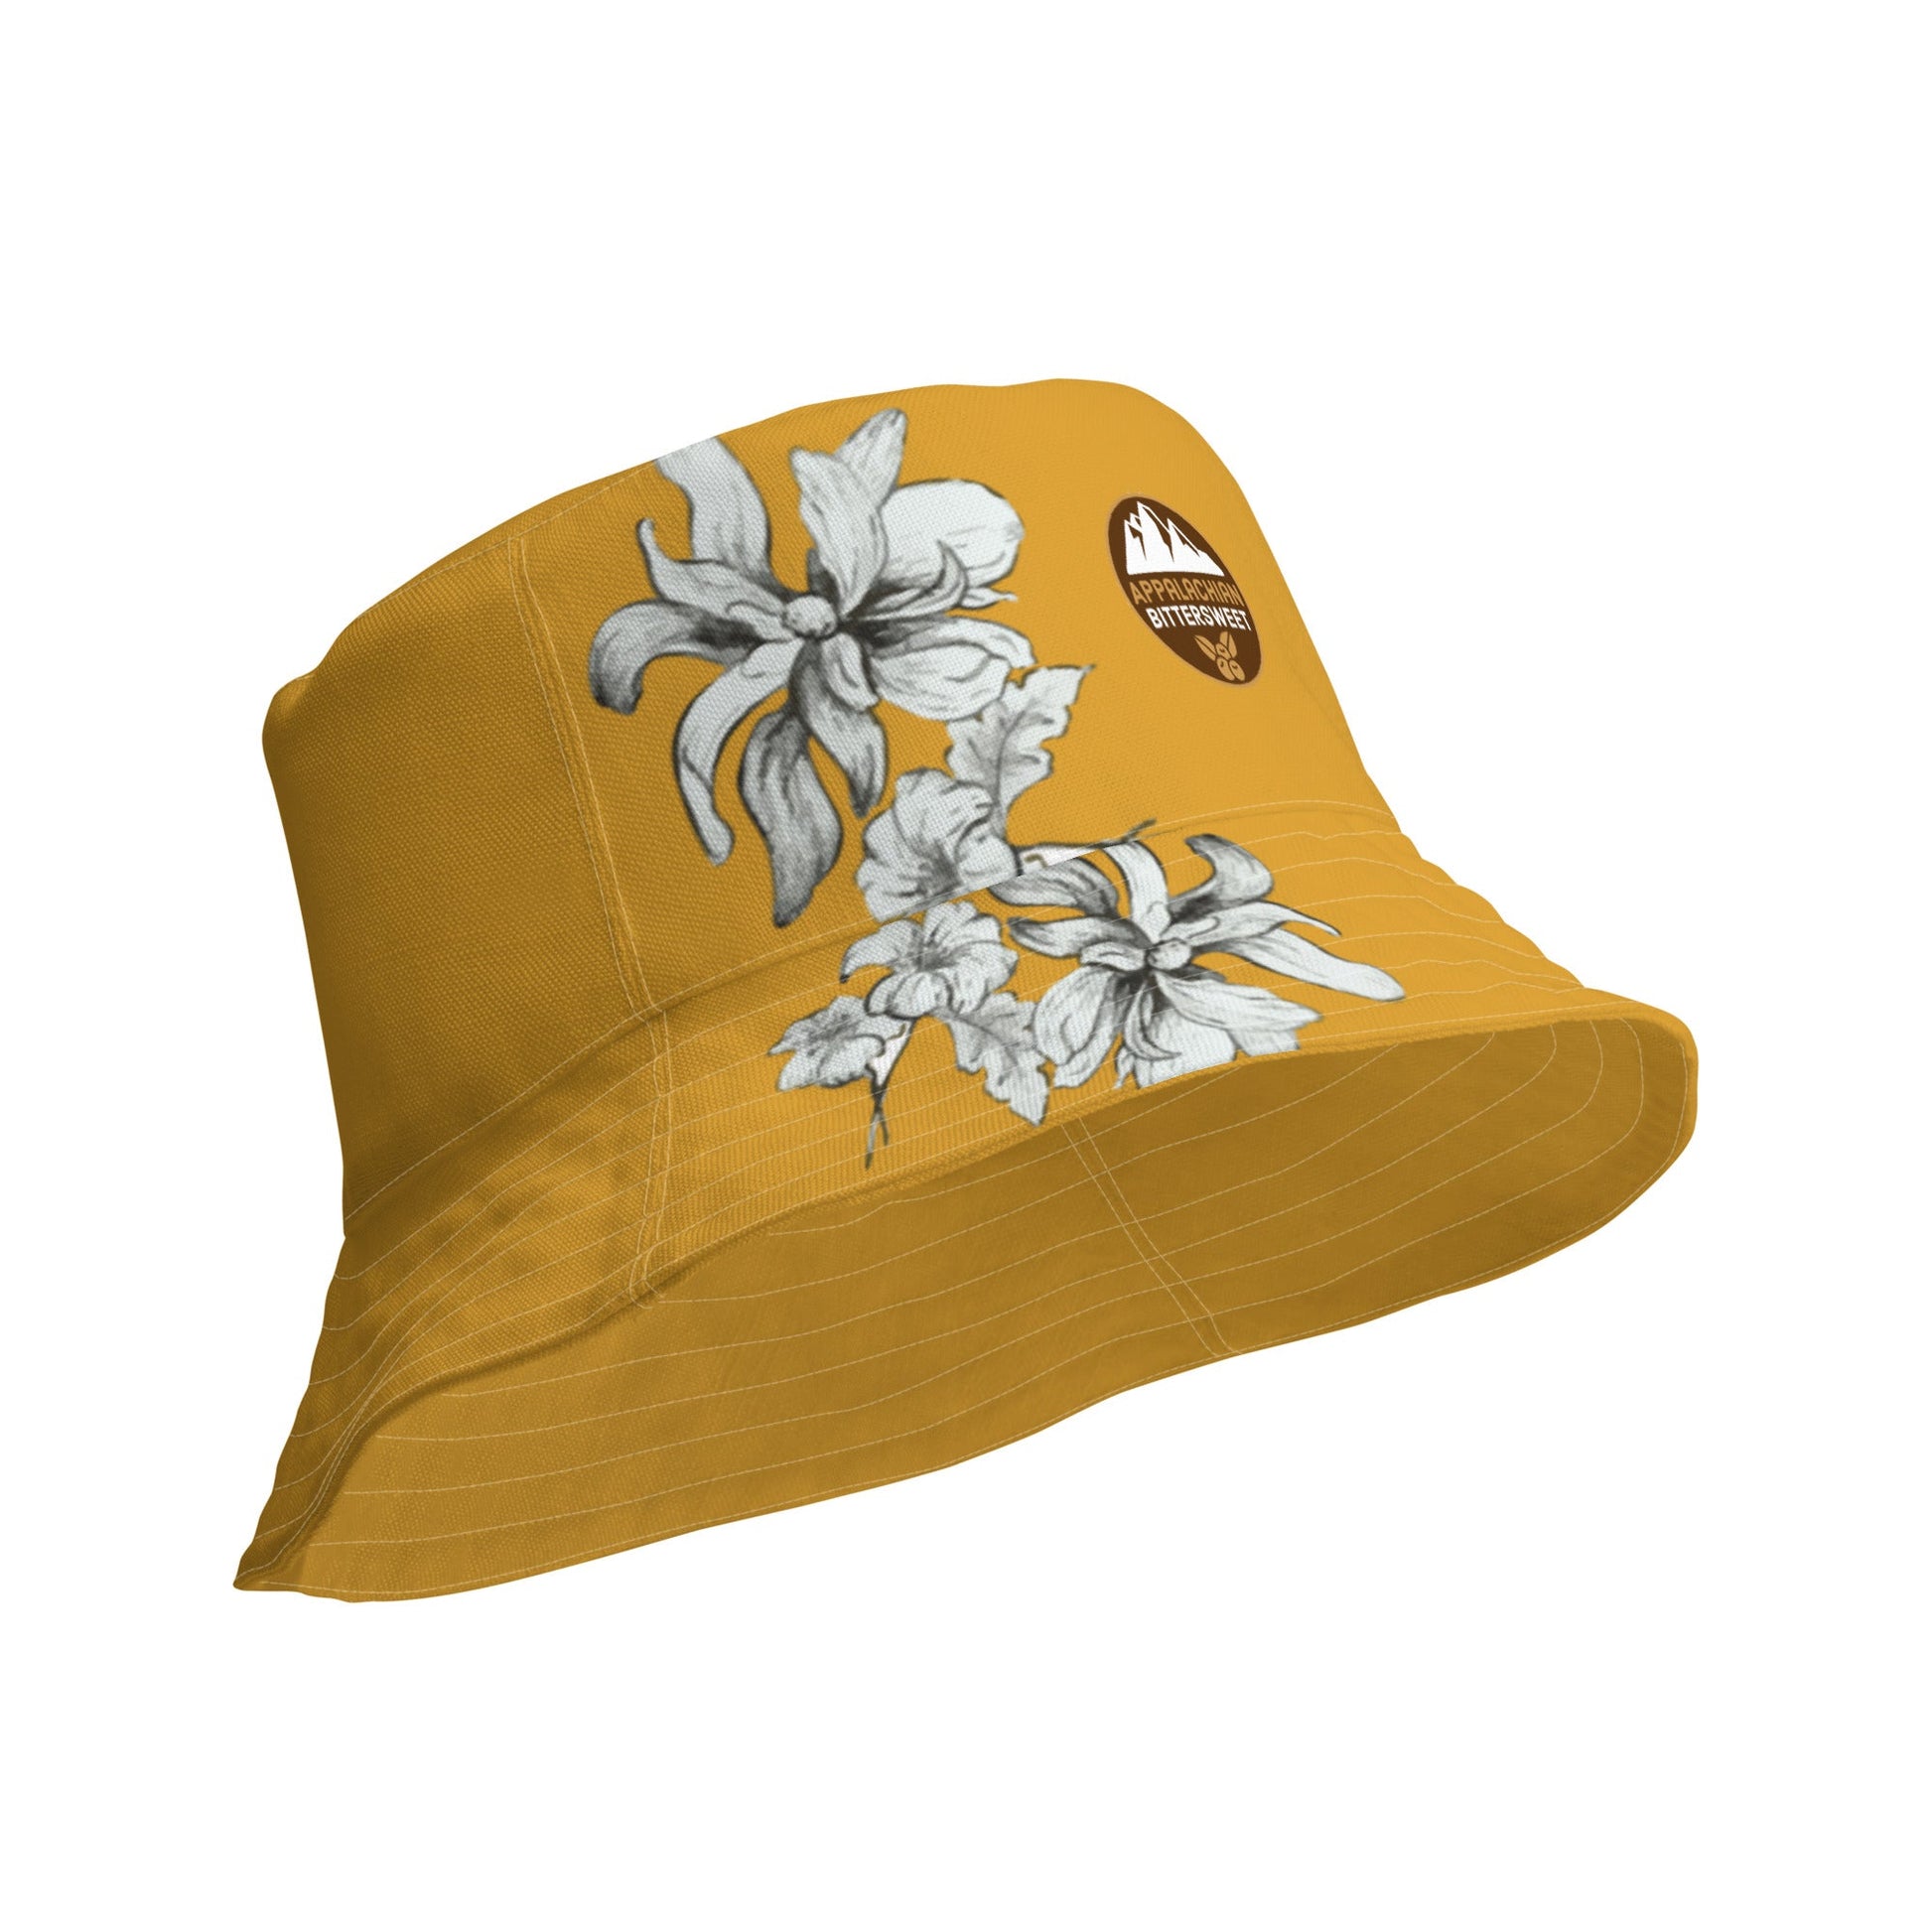 Mustard Vintage Floral Reversible bucket hat - Appalachian Bittersweet - bucket hat